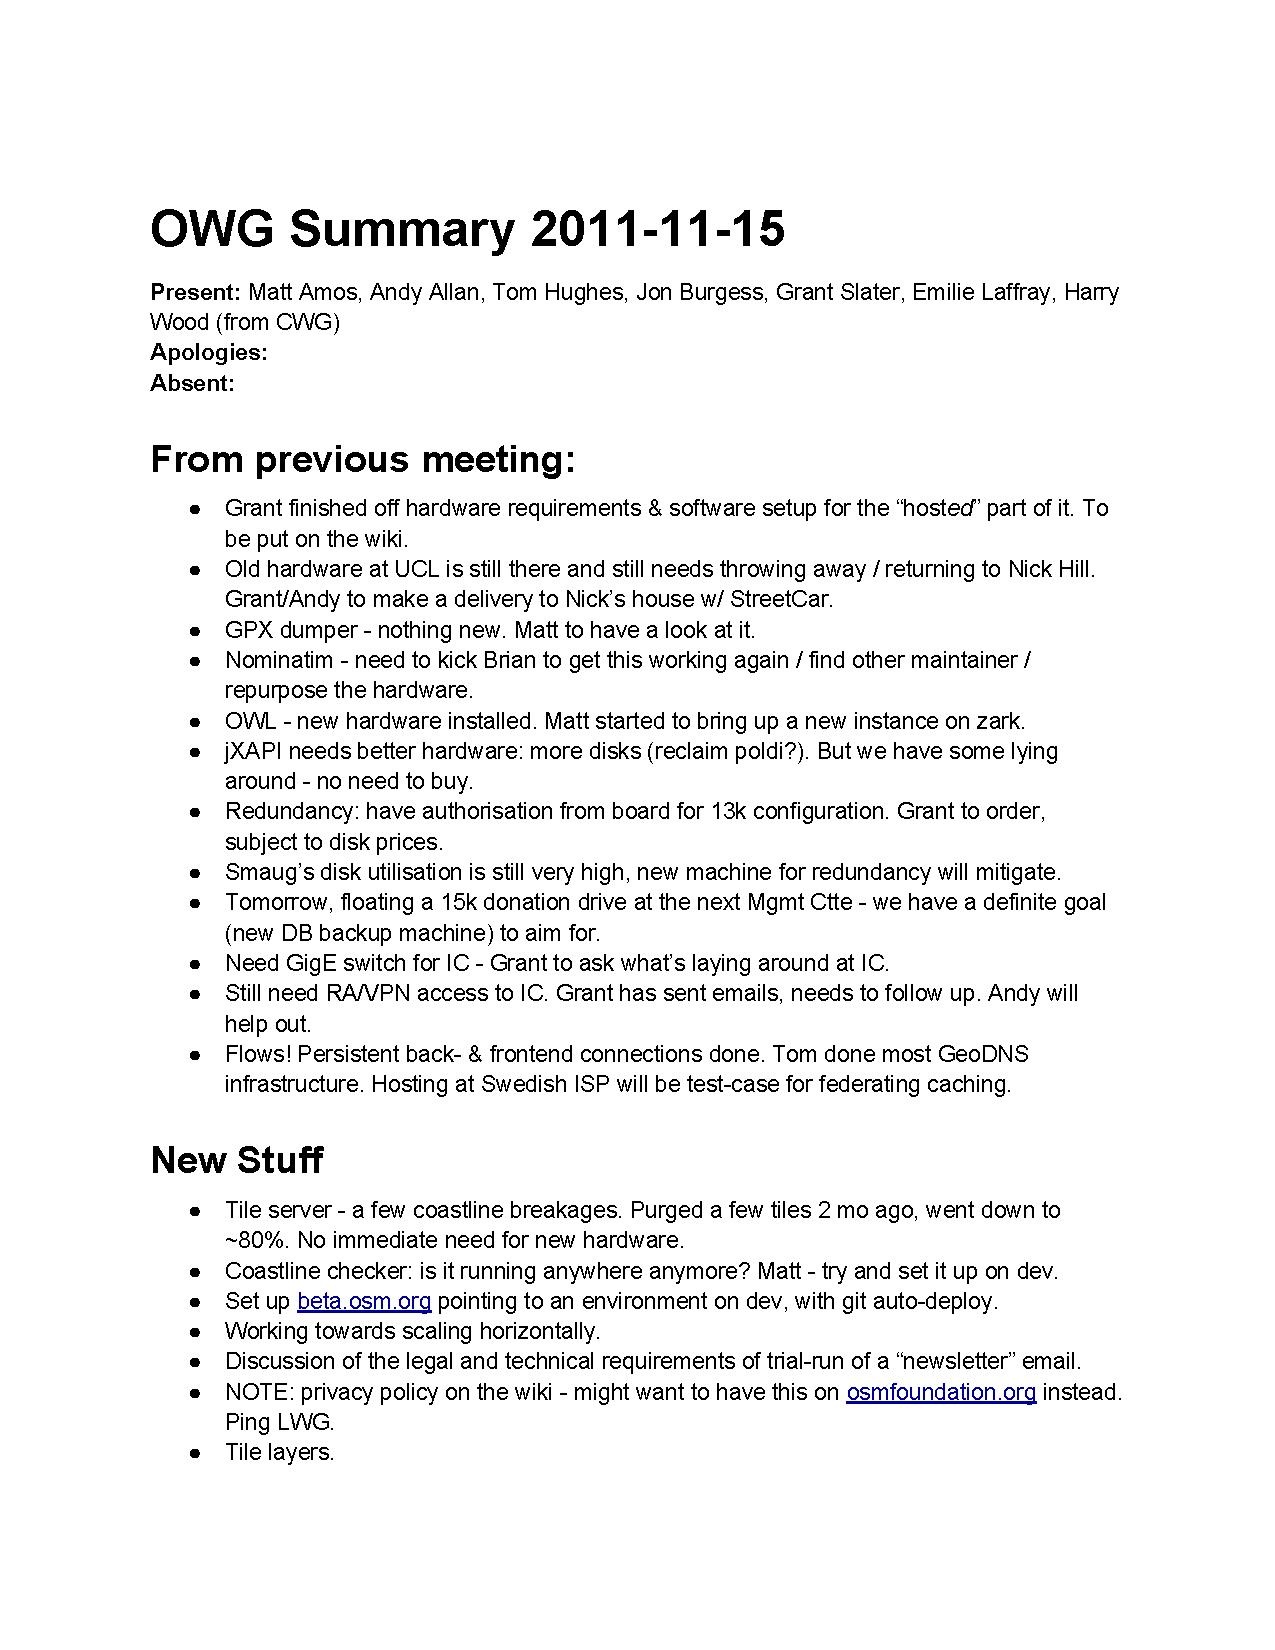 OWG Summary 2011-11-15.pdf